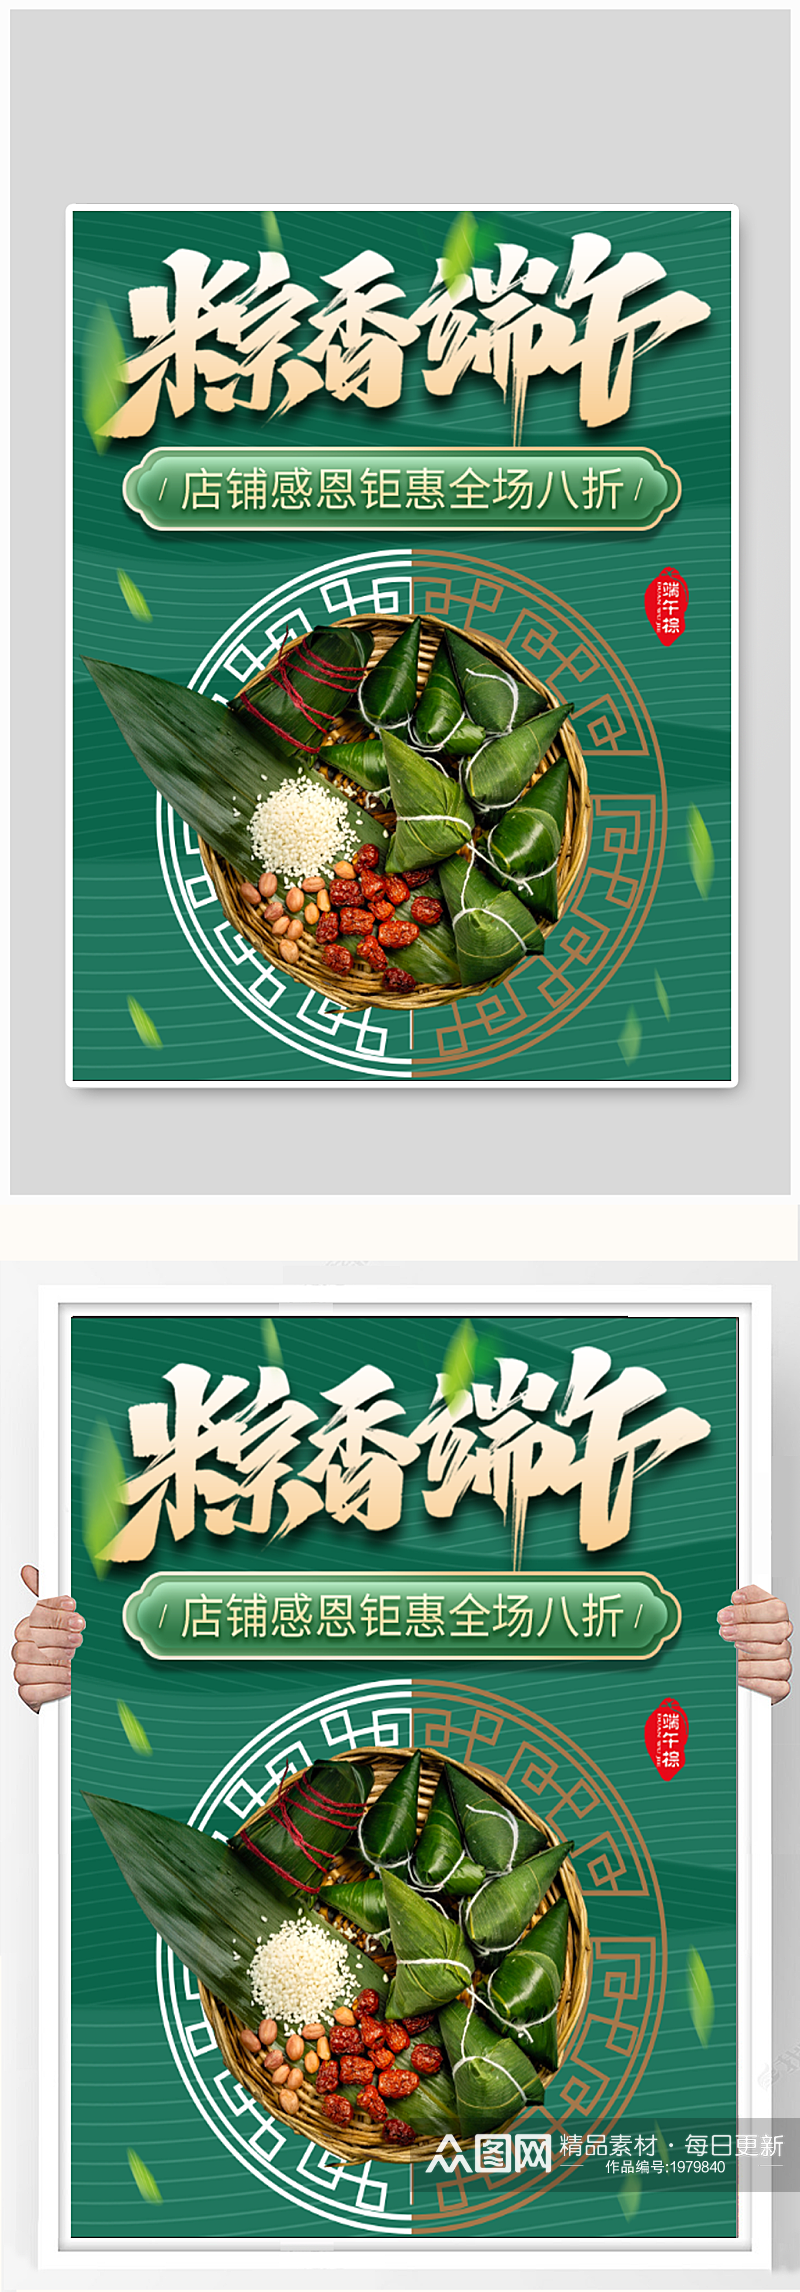 端午节粽子促销海报素材